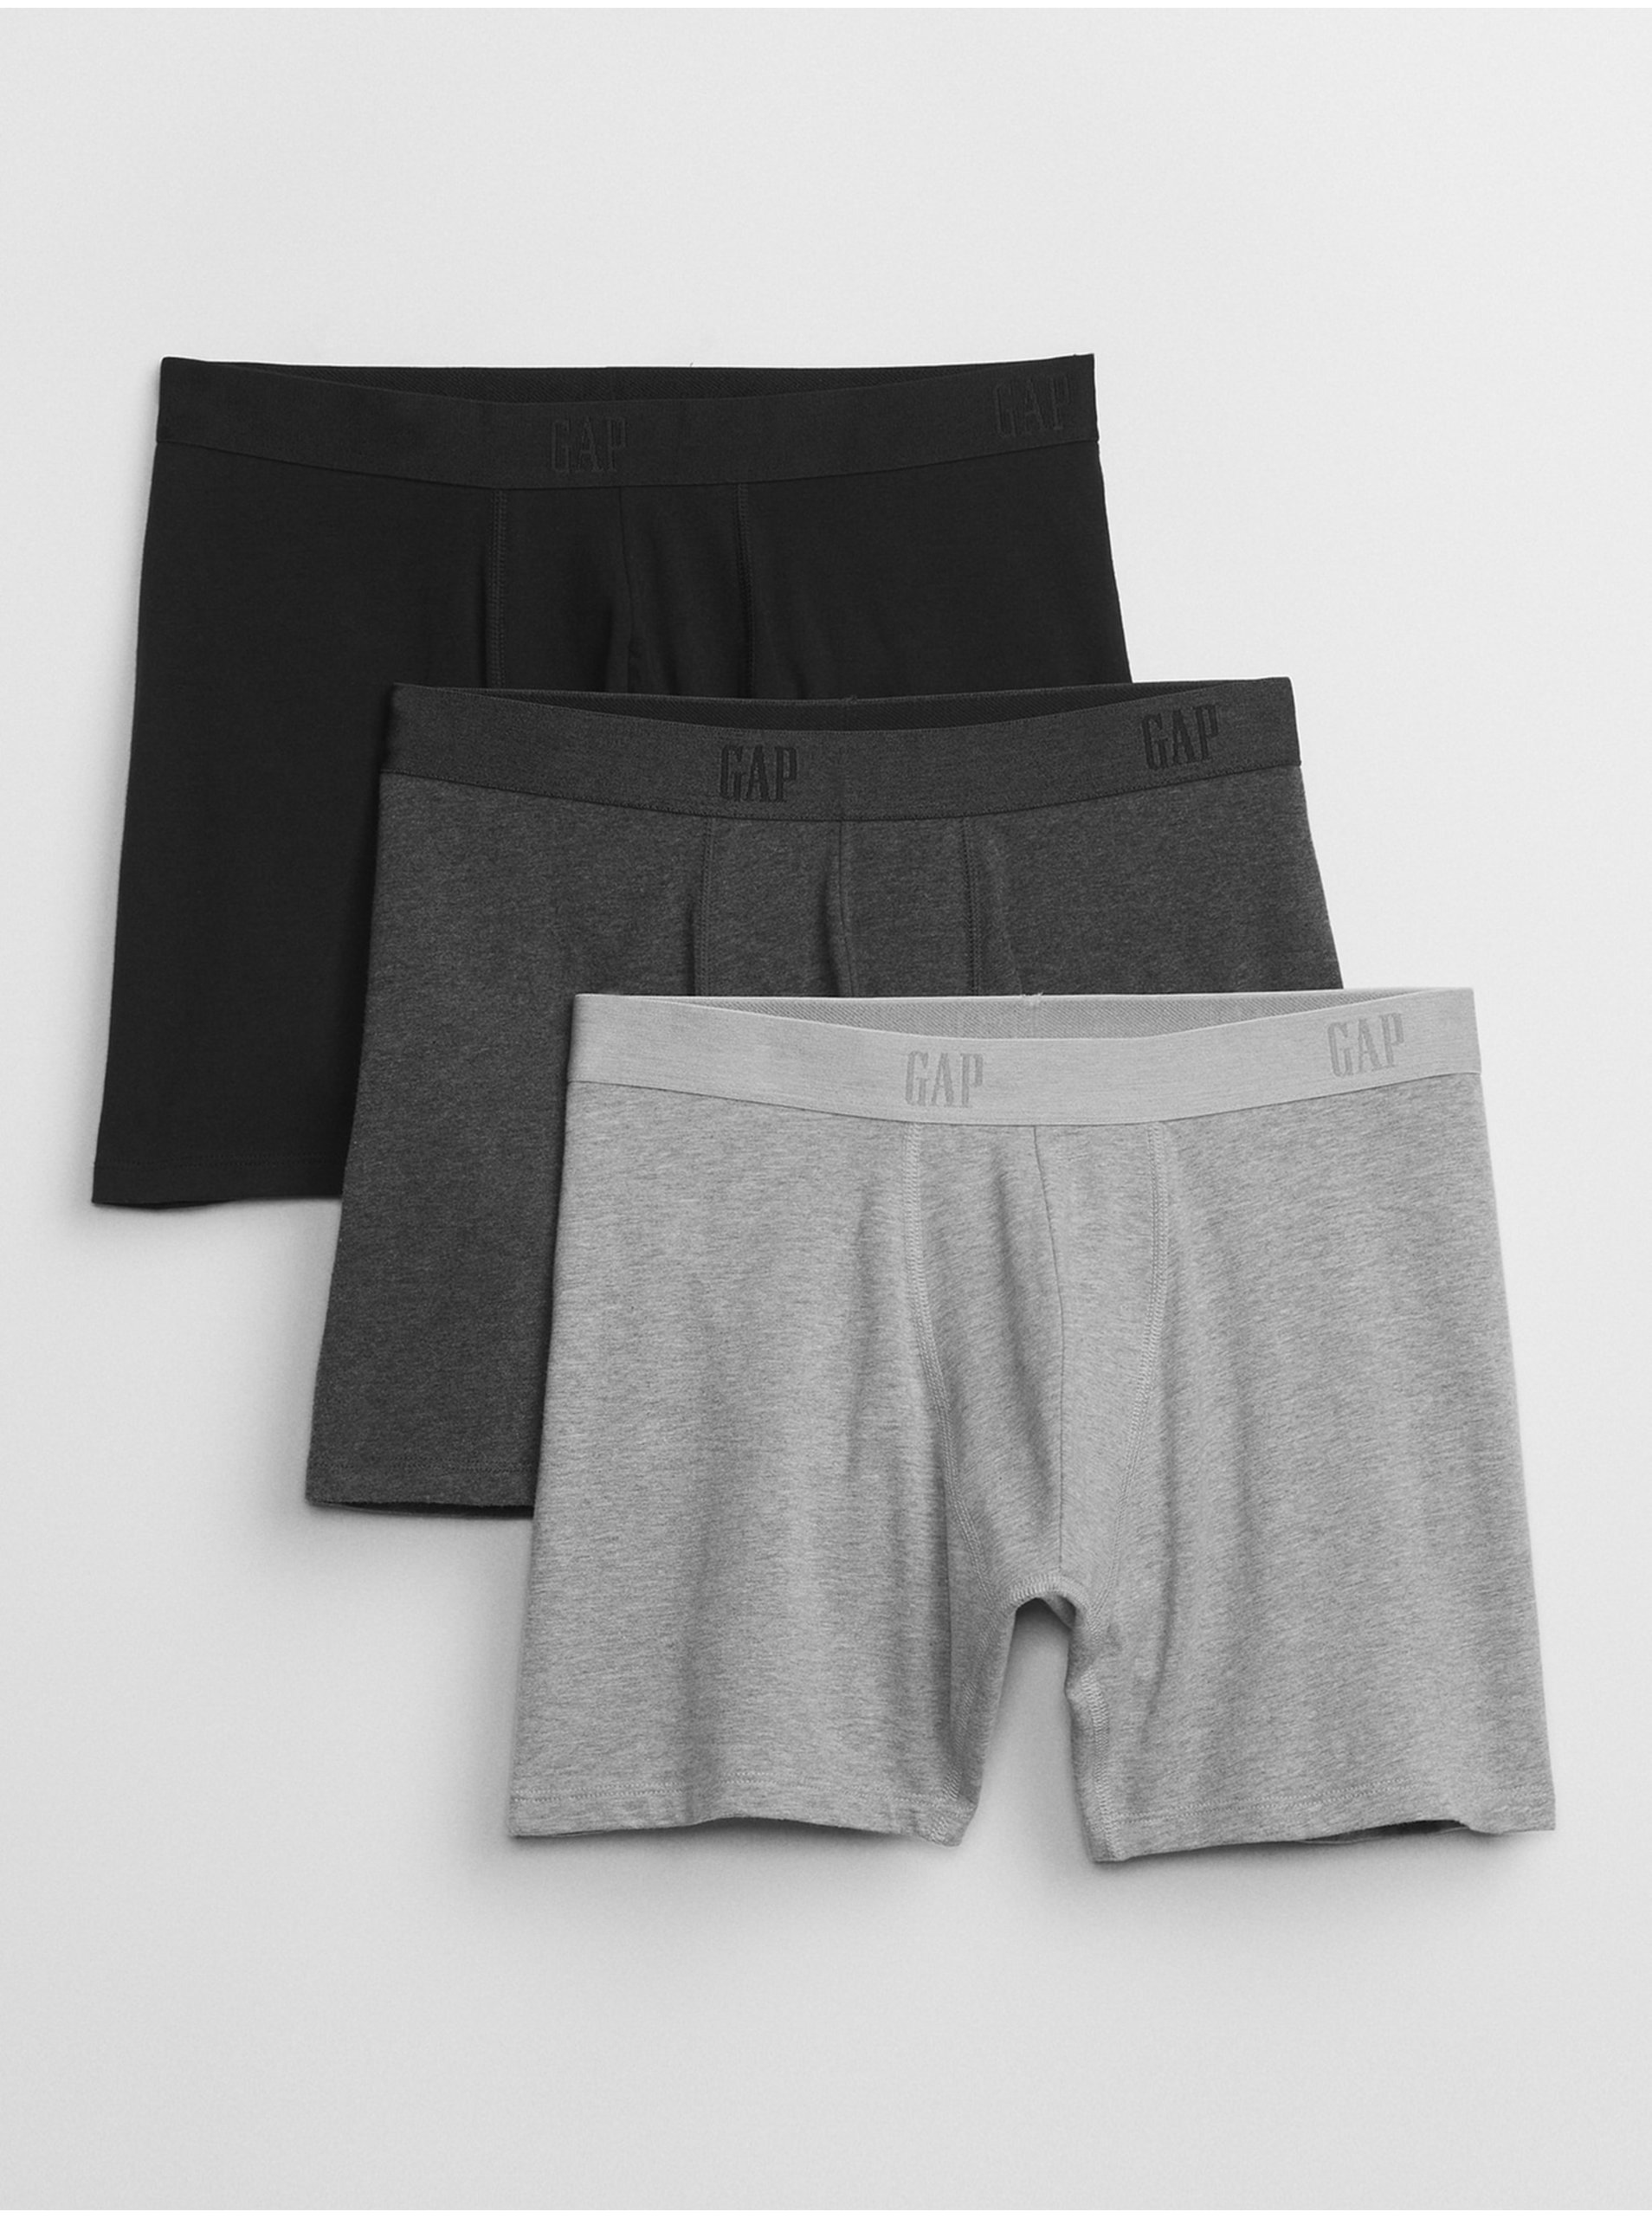 Lacno Súprava troch pánskych boxeriek v čiernej, tmavo a svetlo šedej farbe GAP